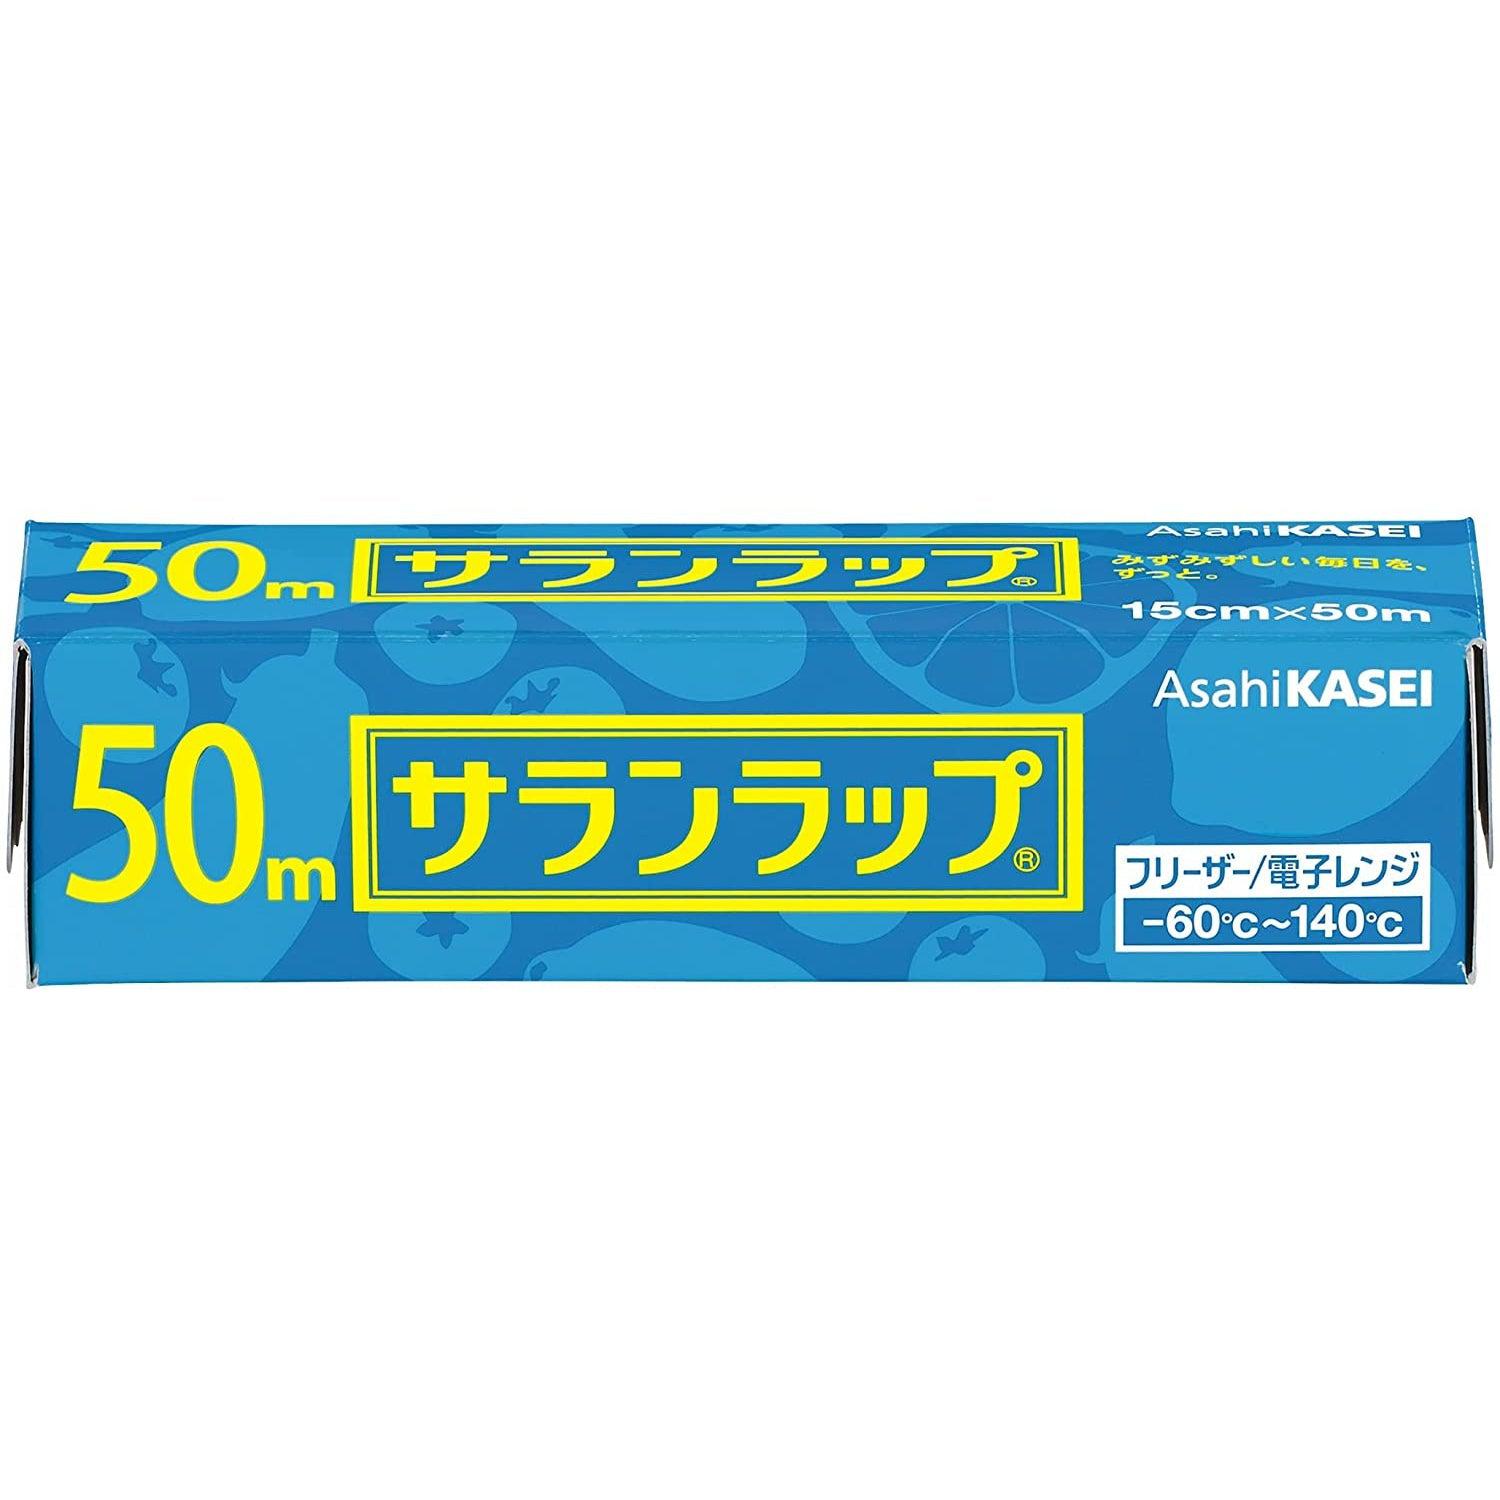 Asahi Kasei Saran Wrap Japanese Plastic Wrap 22cm x 50m – Japanese